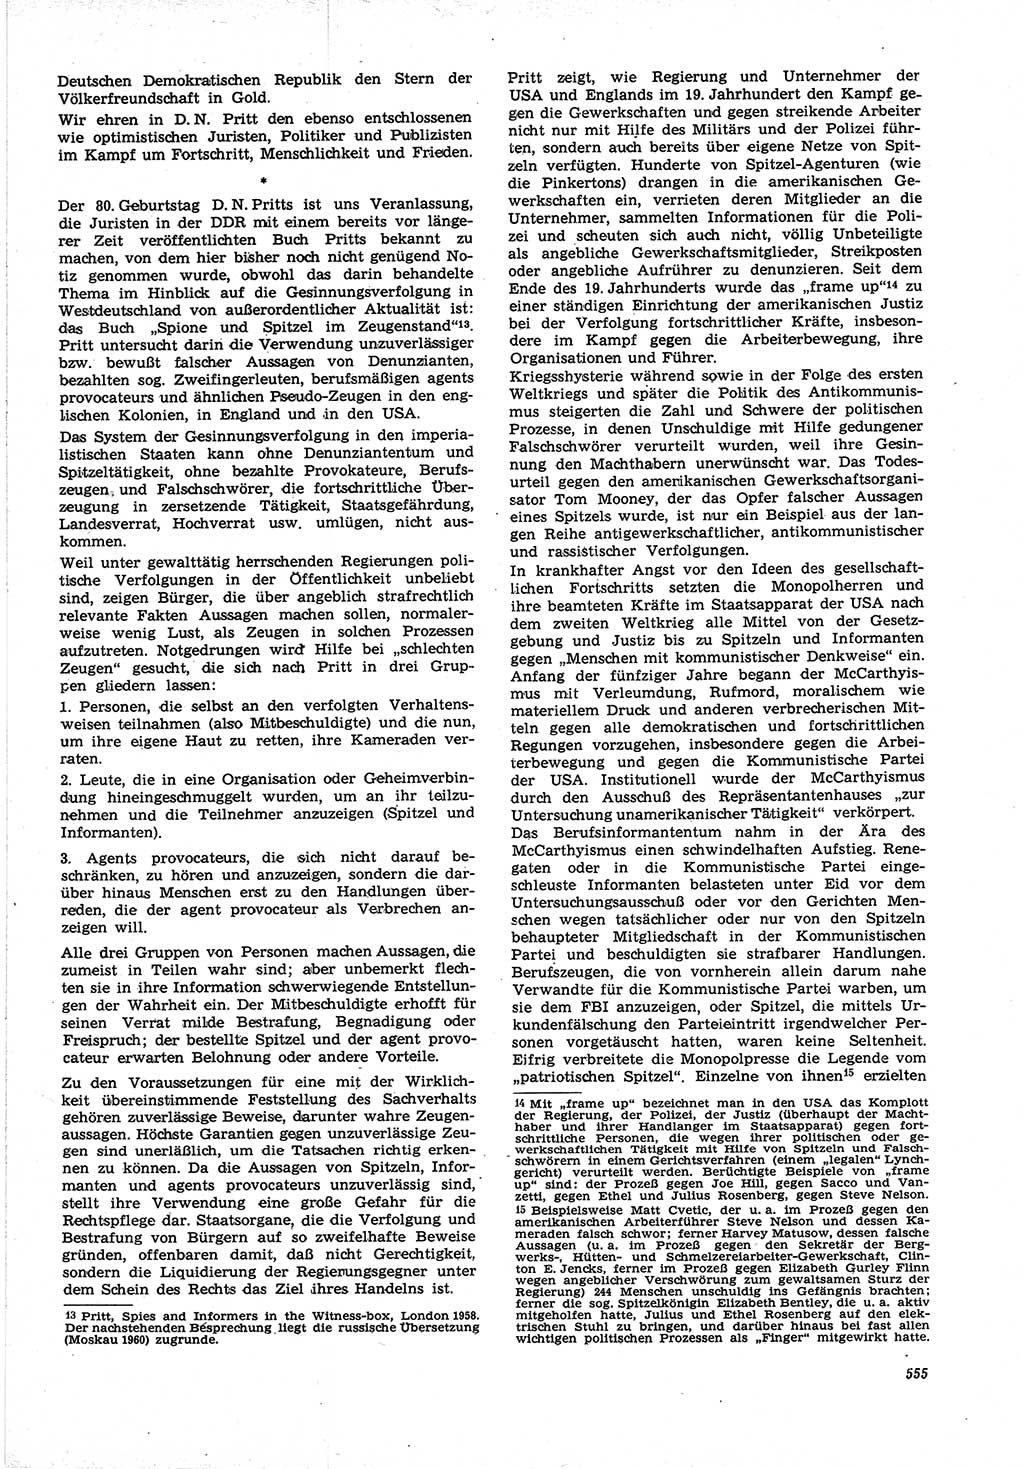 Neue Justiz (NJ), Zeitschrift für Recht und Rechtswissenschaft [Deutsche Demokratische Republik (DDR)], 21. Jahrgang 1967, Seite 555 (NJ DDR 1967, S. 555)